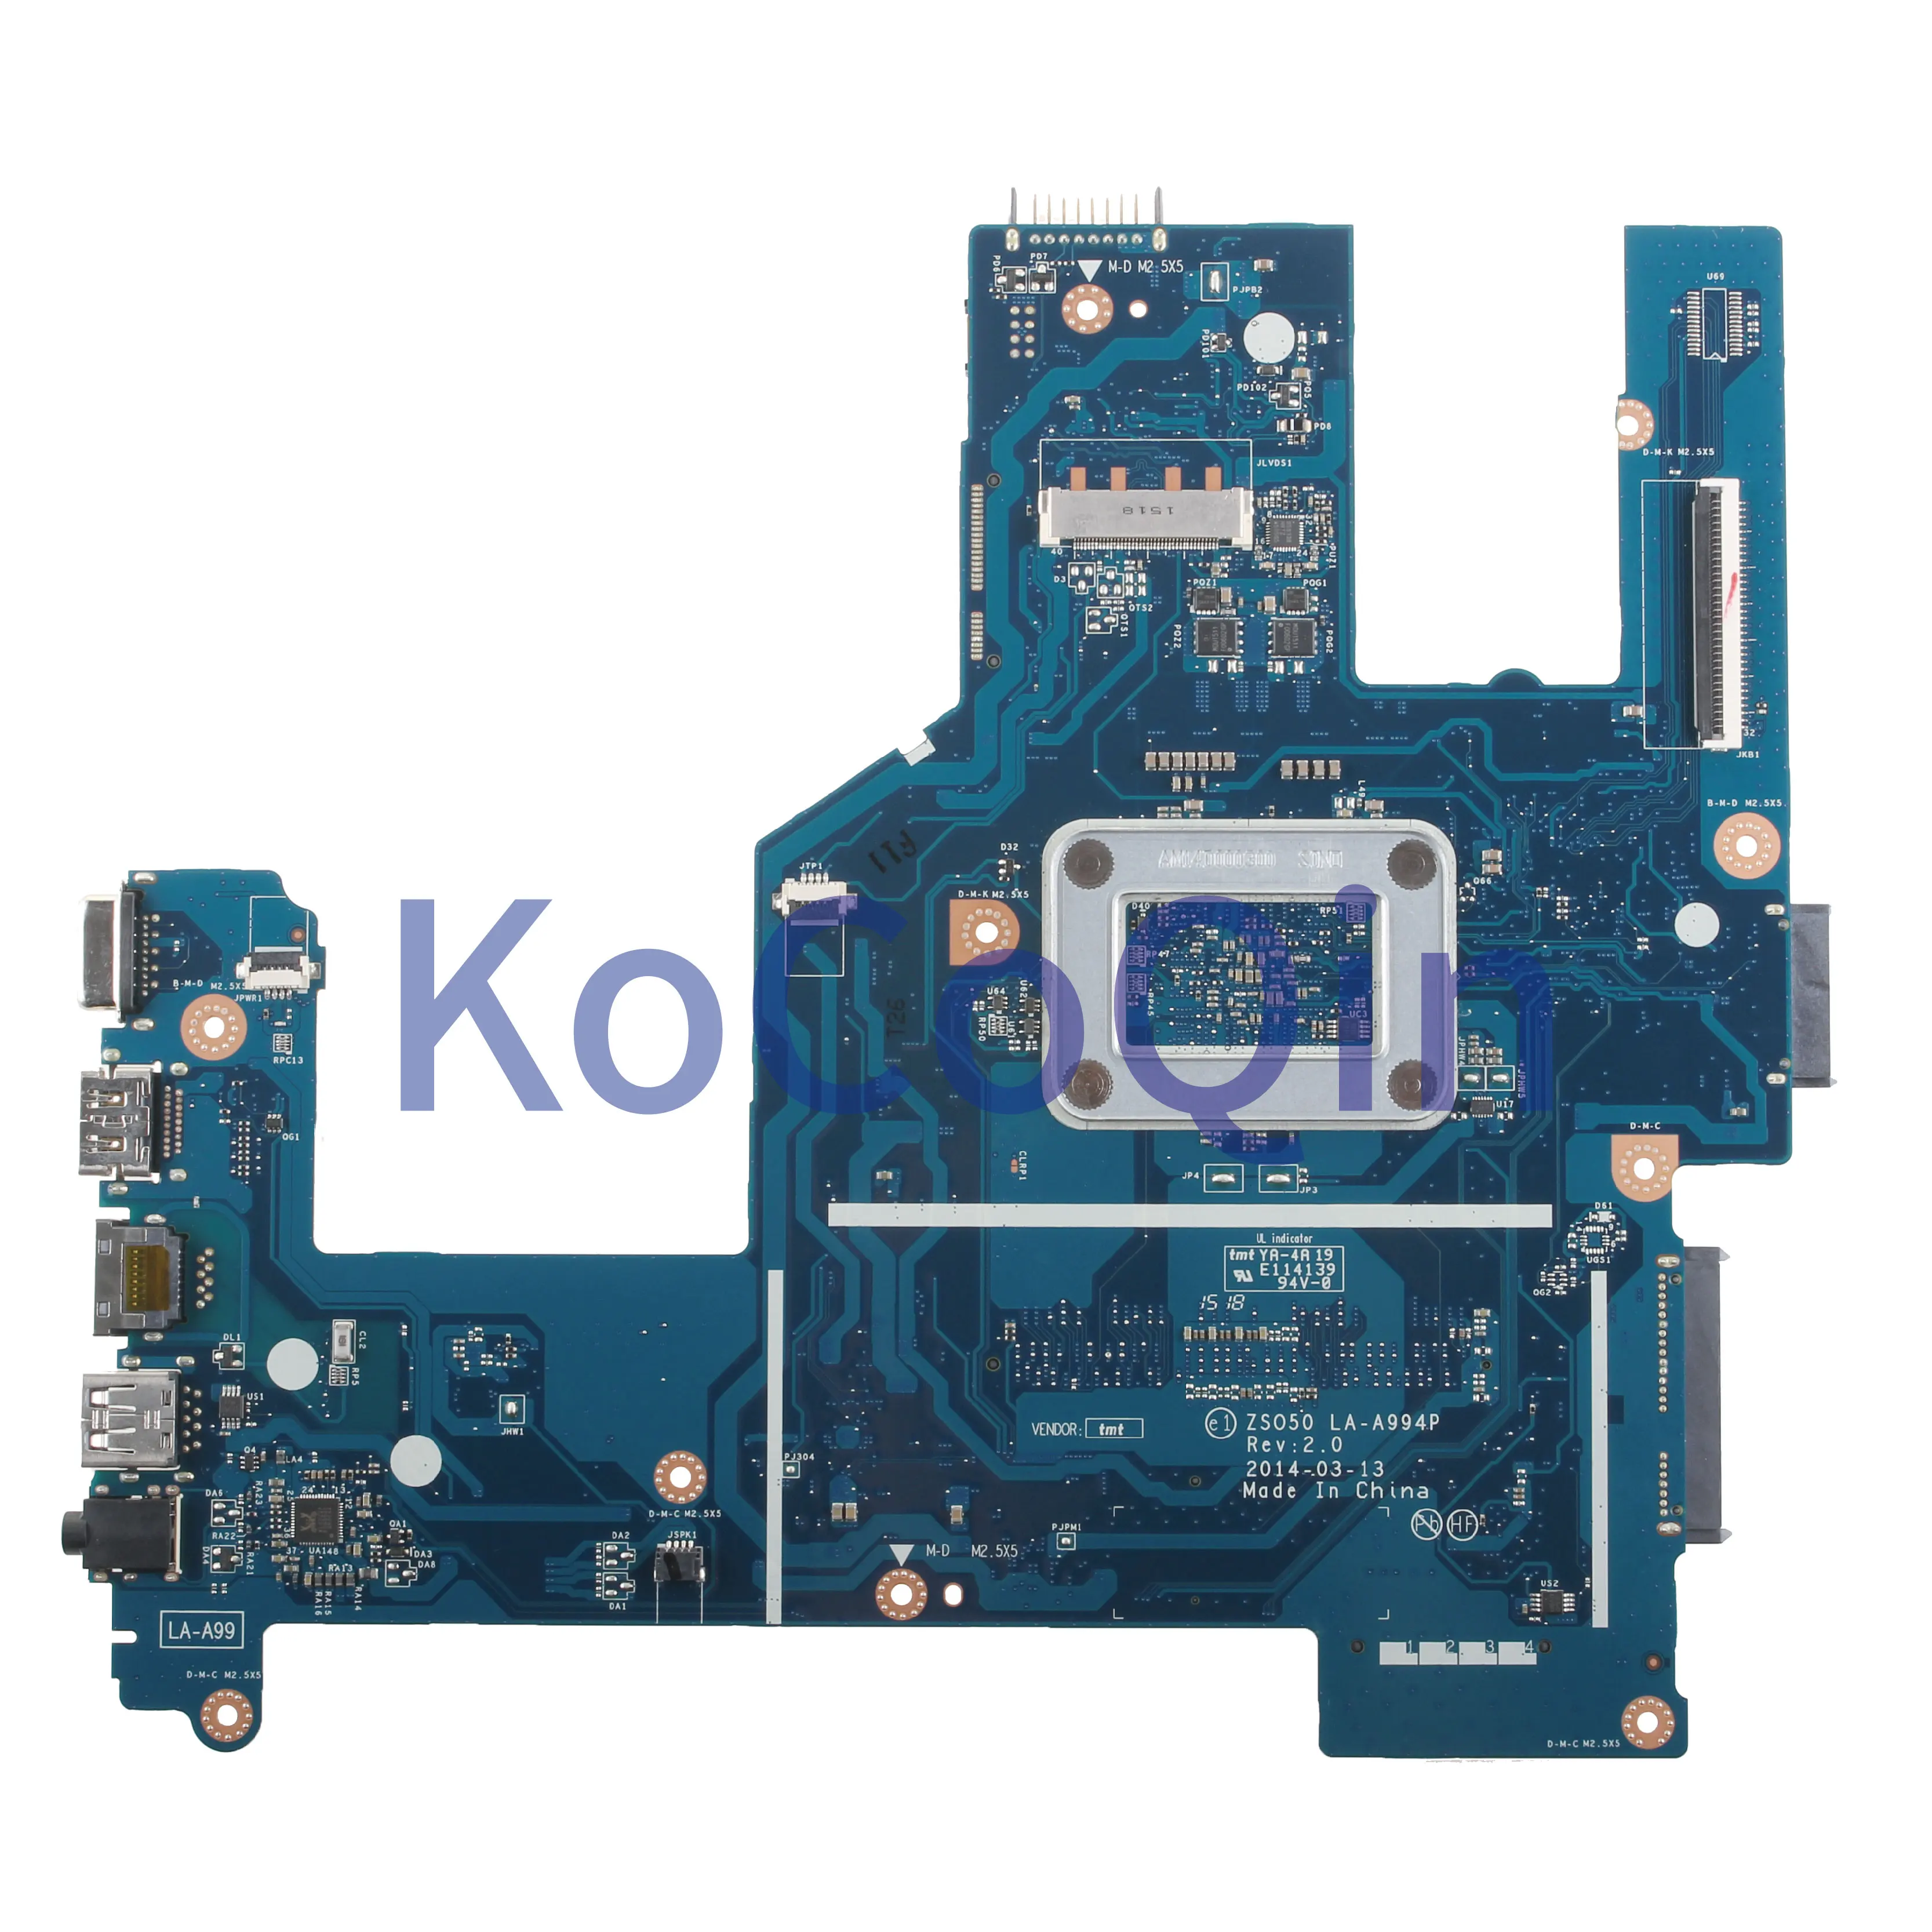 KoCoQin Prenosni računalnik z matično ploščo Za HP Par 15-R 15T-R 250 G3 Jedro N2840 SR1YJ Mainboard ZS050 LA-A994P 789460-001 789460-501 preizkušen